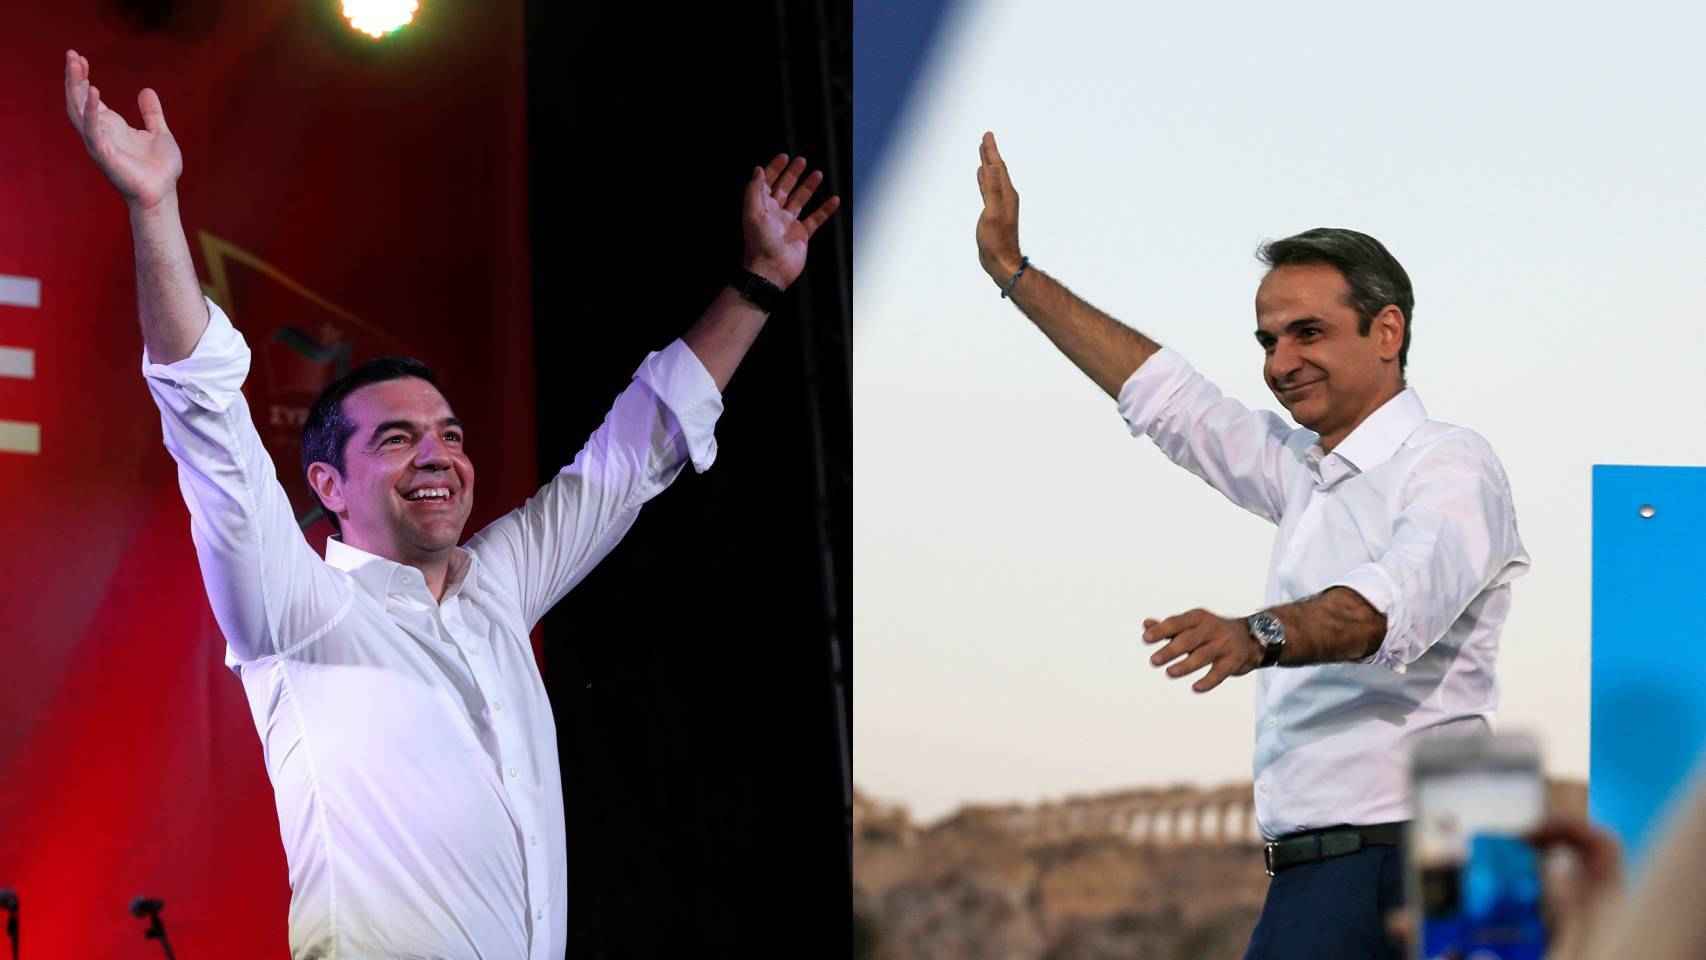 Alexis Tsipras y Kyriakos Mitsotakis durante sus respectivas campañas